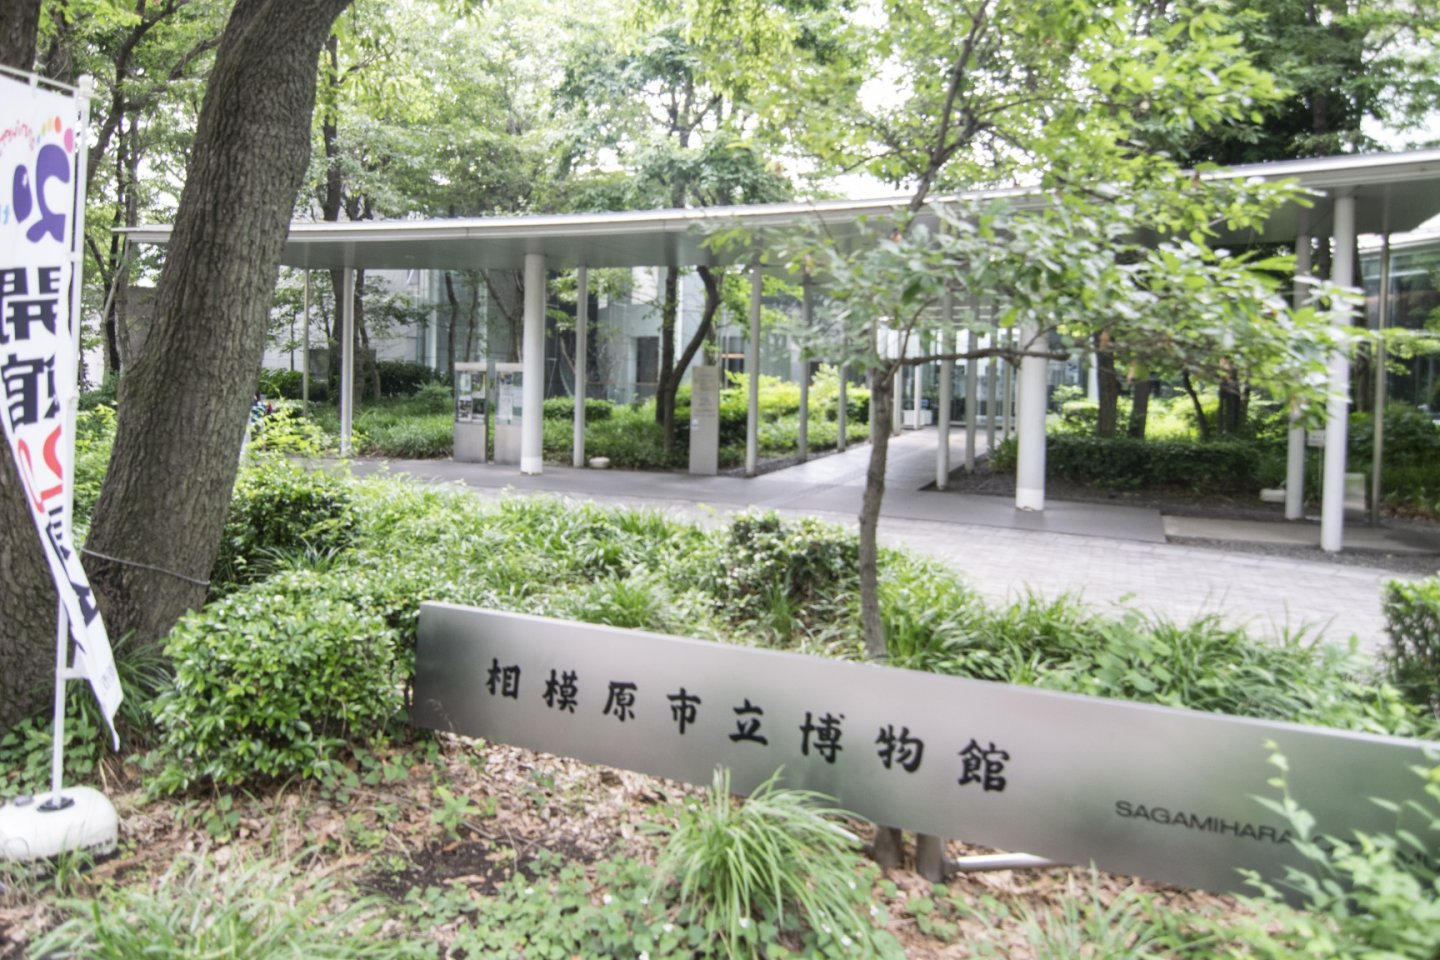 Lối vào Bảo tàng thành phố Sagamihara, một đường lái xe được bao phủ bởi những cây xanh tươi tốt.